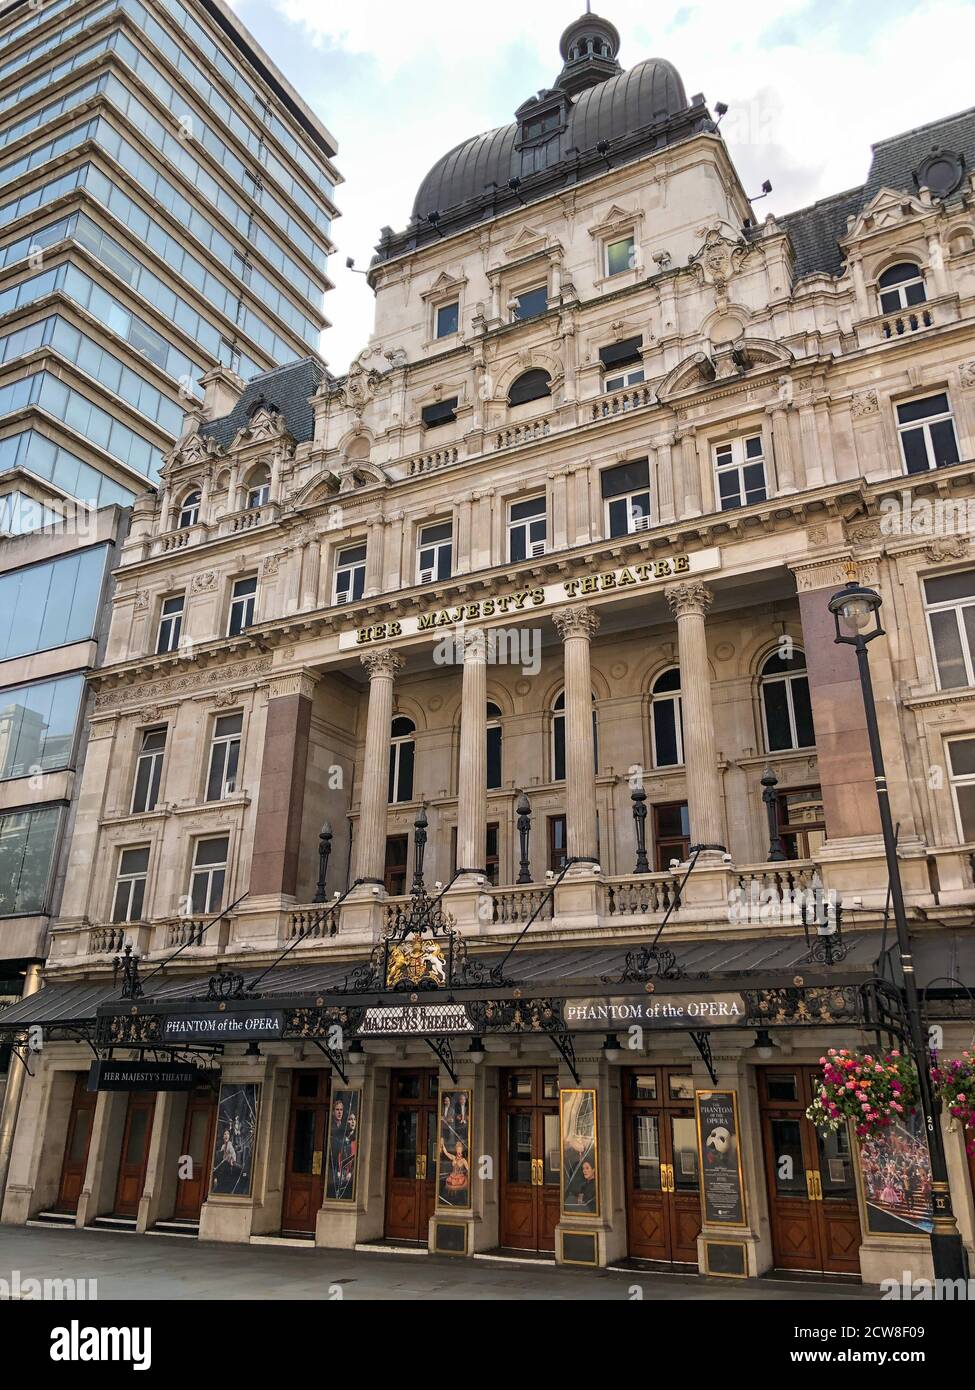 Il Teatro di sua Maestà nel West End di Londra, dove il FANTASMA DELL’OPERA di Andrew Lloyd Webber aveva giocato continuamente dal 1986, rimane chiuso per affari a causa delle restrizioni COVID-19 imposte nel marzo 2020. Foto Stock